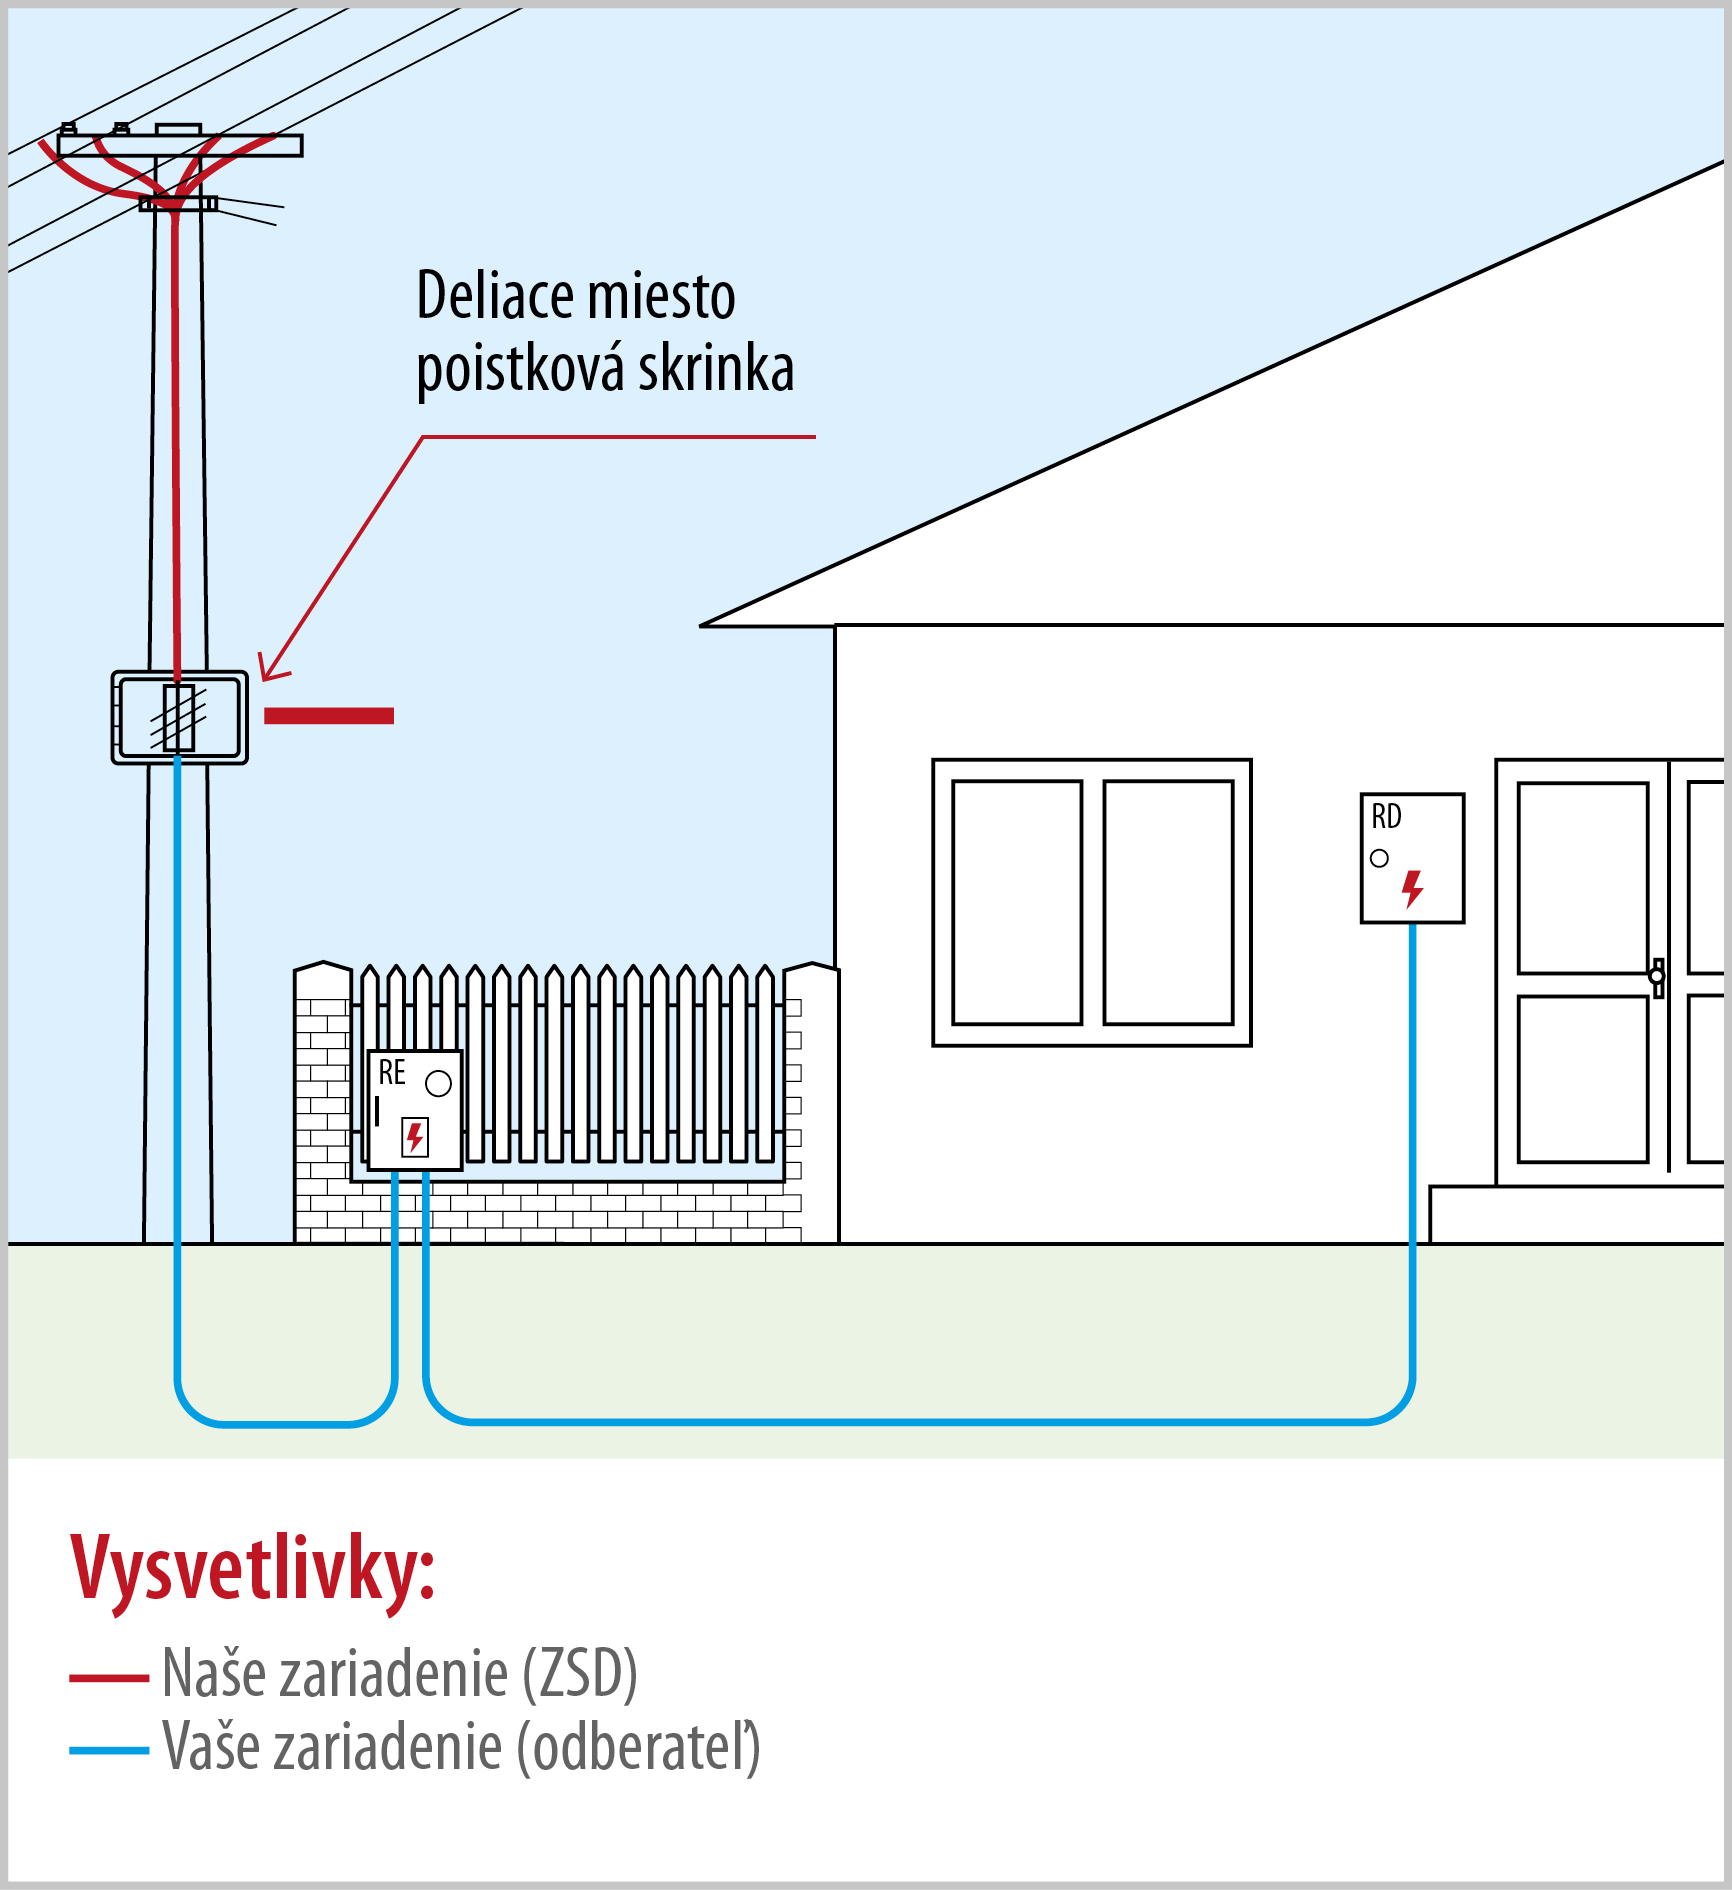 Pripojenie rodinného domu zo vzdušnej siete zemnou káblovou prípojkou